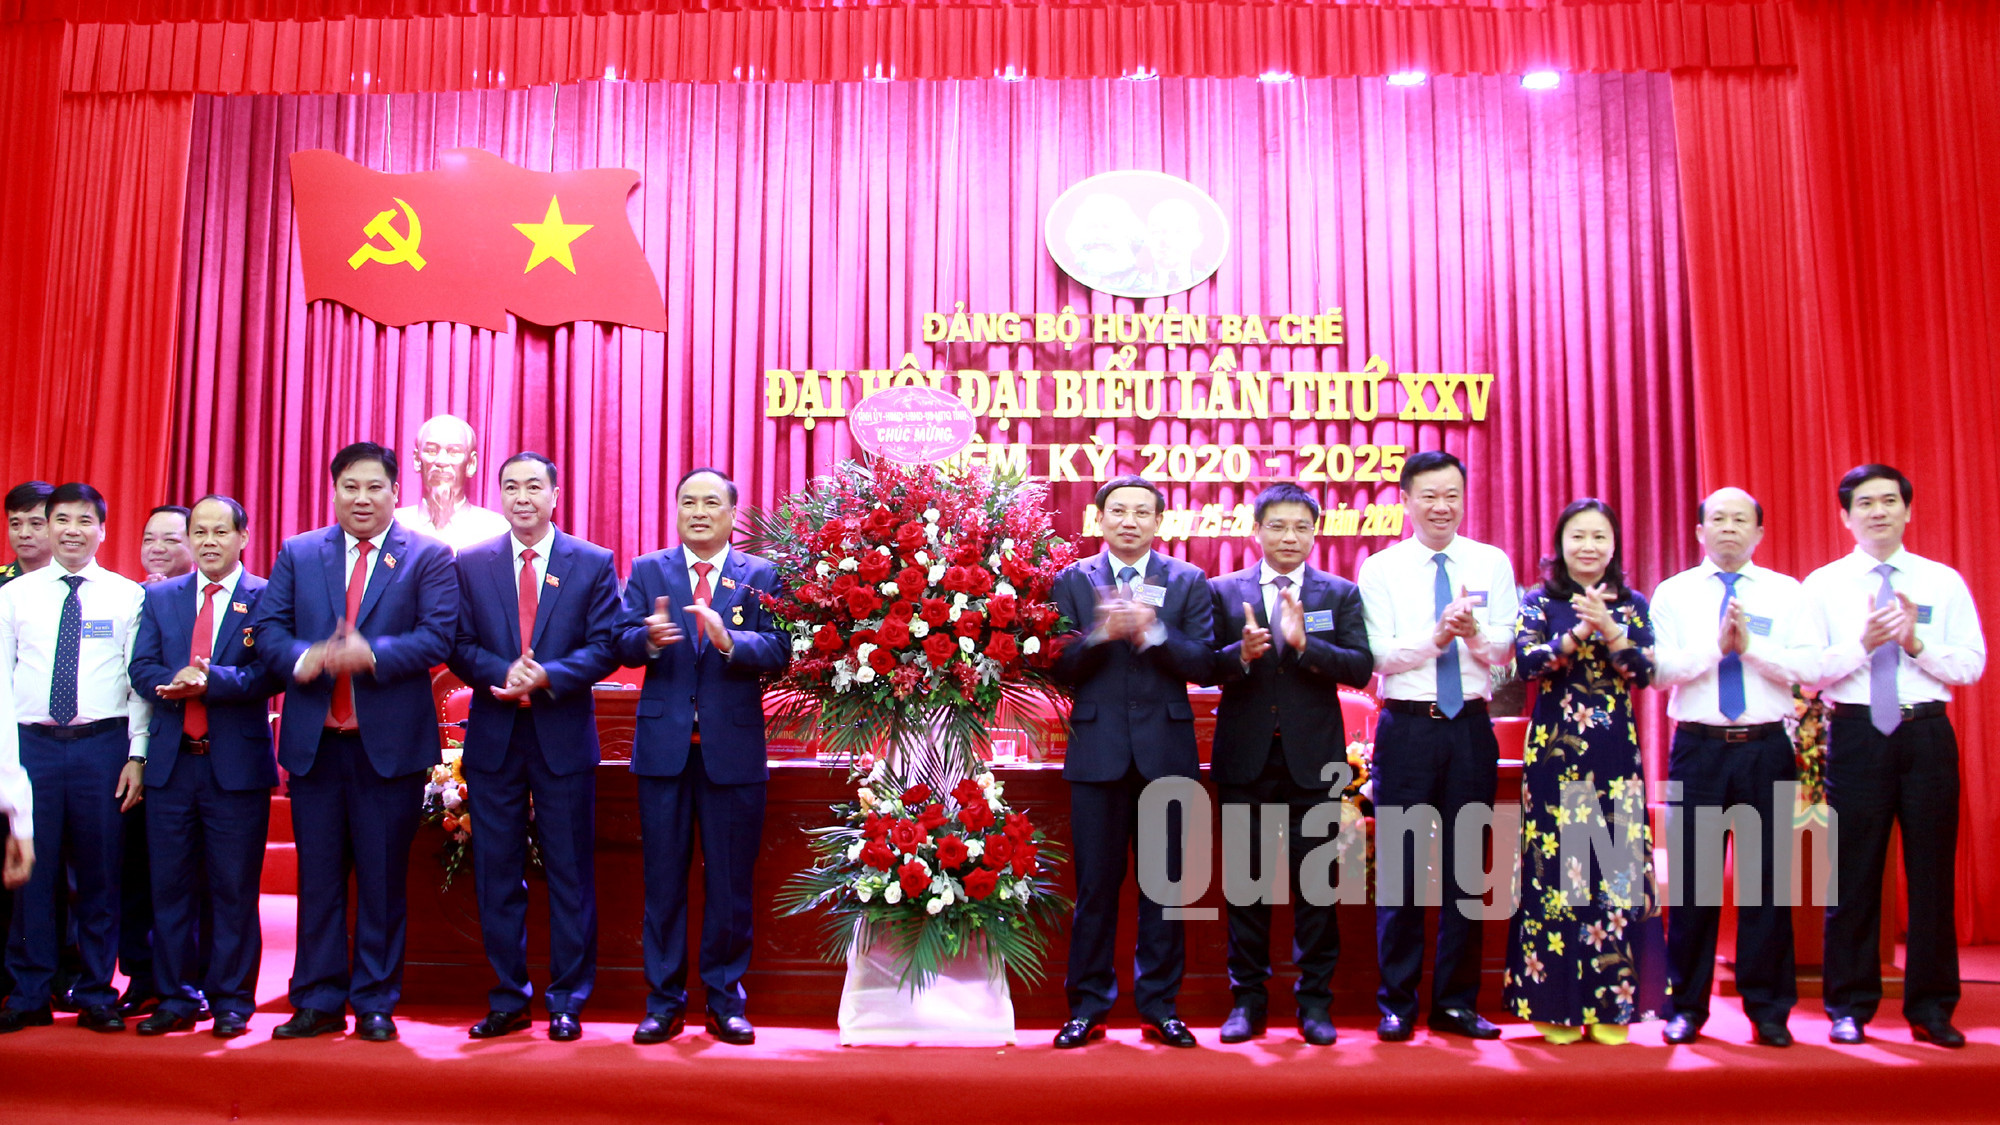 Các đồng chí lãnh đạo tỉnh tặng hoa chúc mừng Đại hội Đại biểu Đảng bộ huyện Ba Chẽ lần thứ XXV, nhiệm kỳ 2020-2025 (6-2020). Ảnh: Mạnh Trường